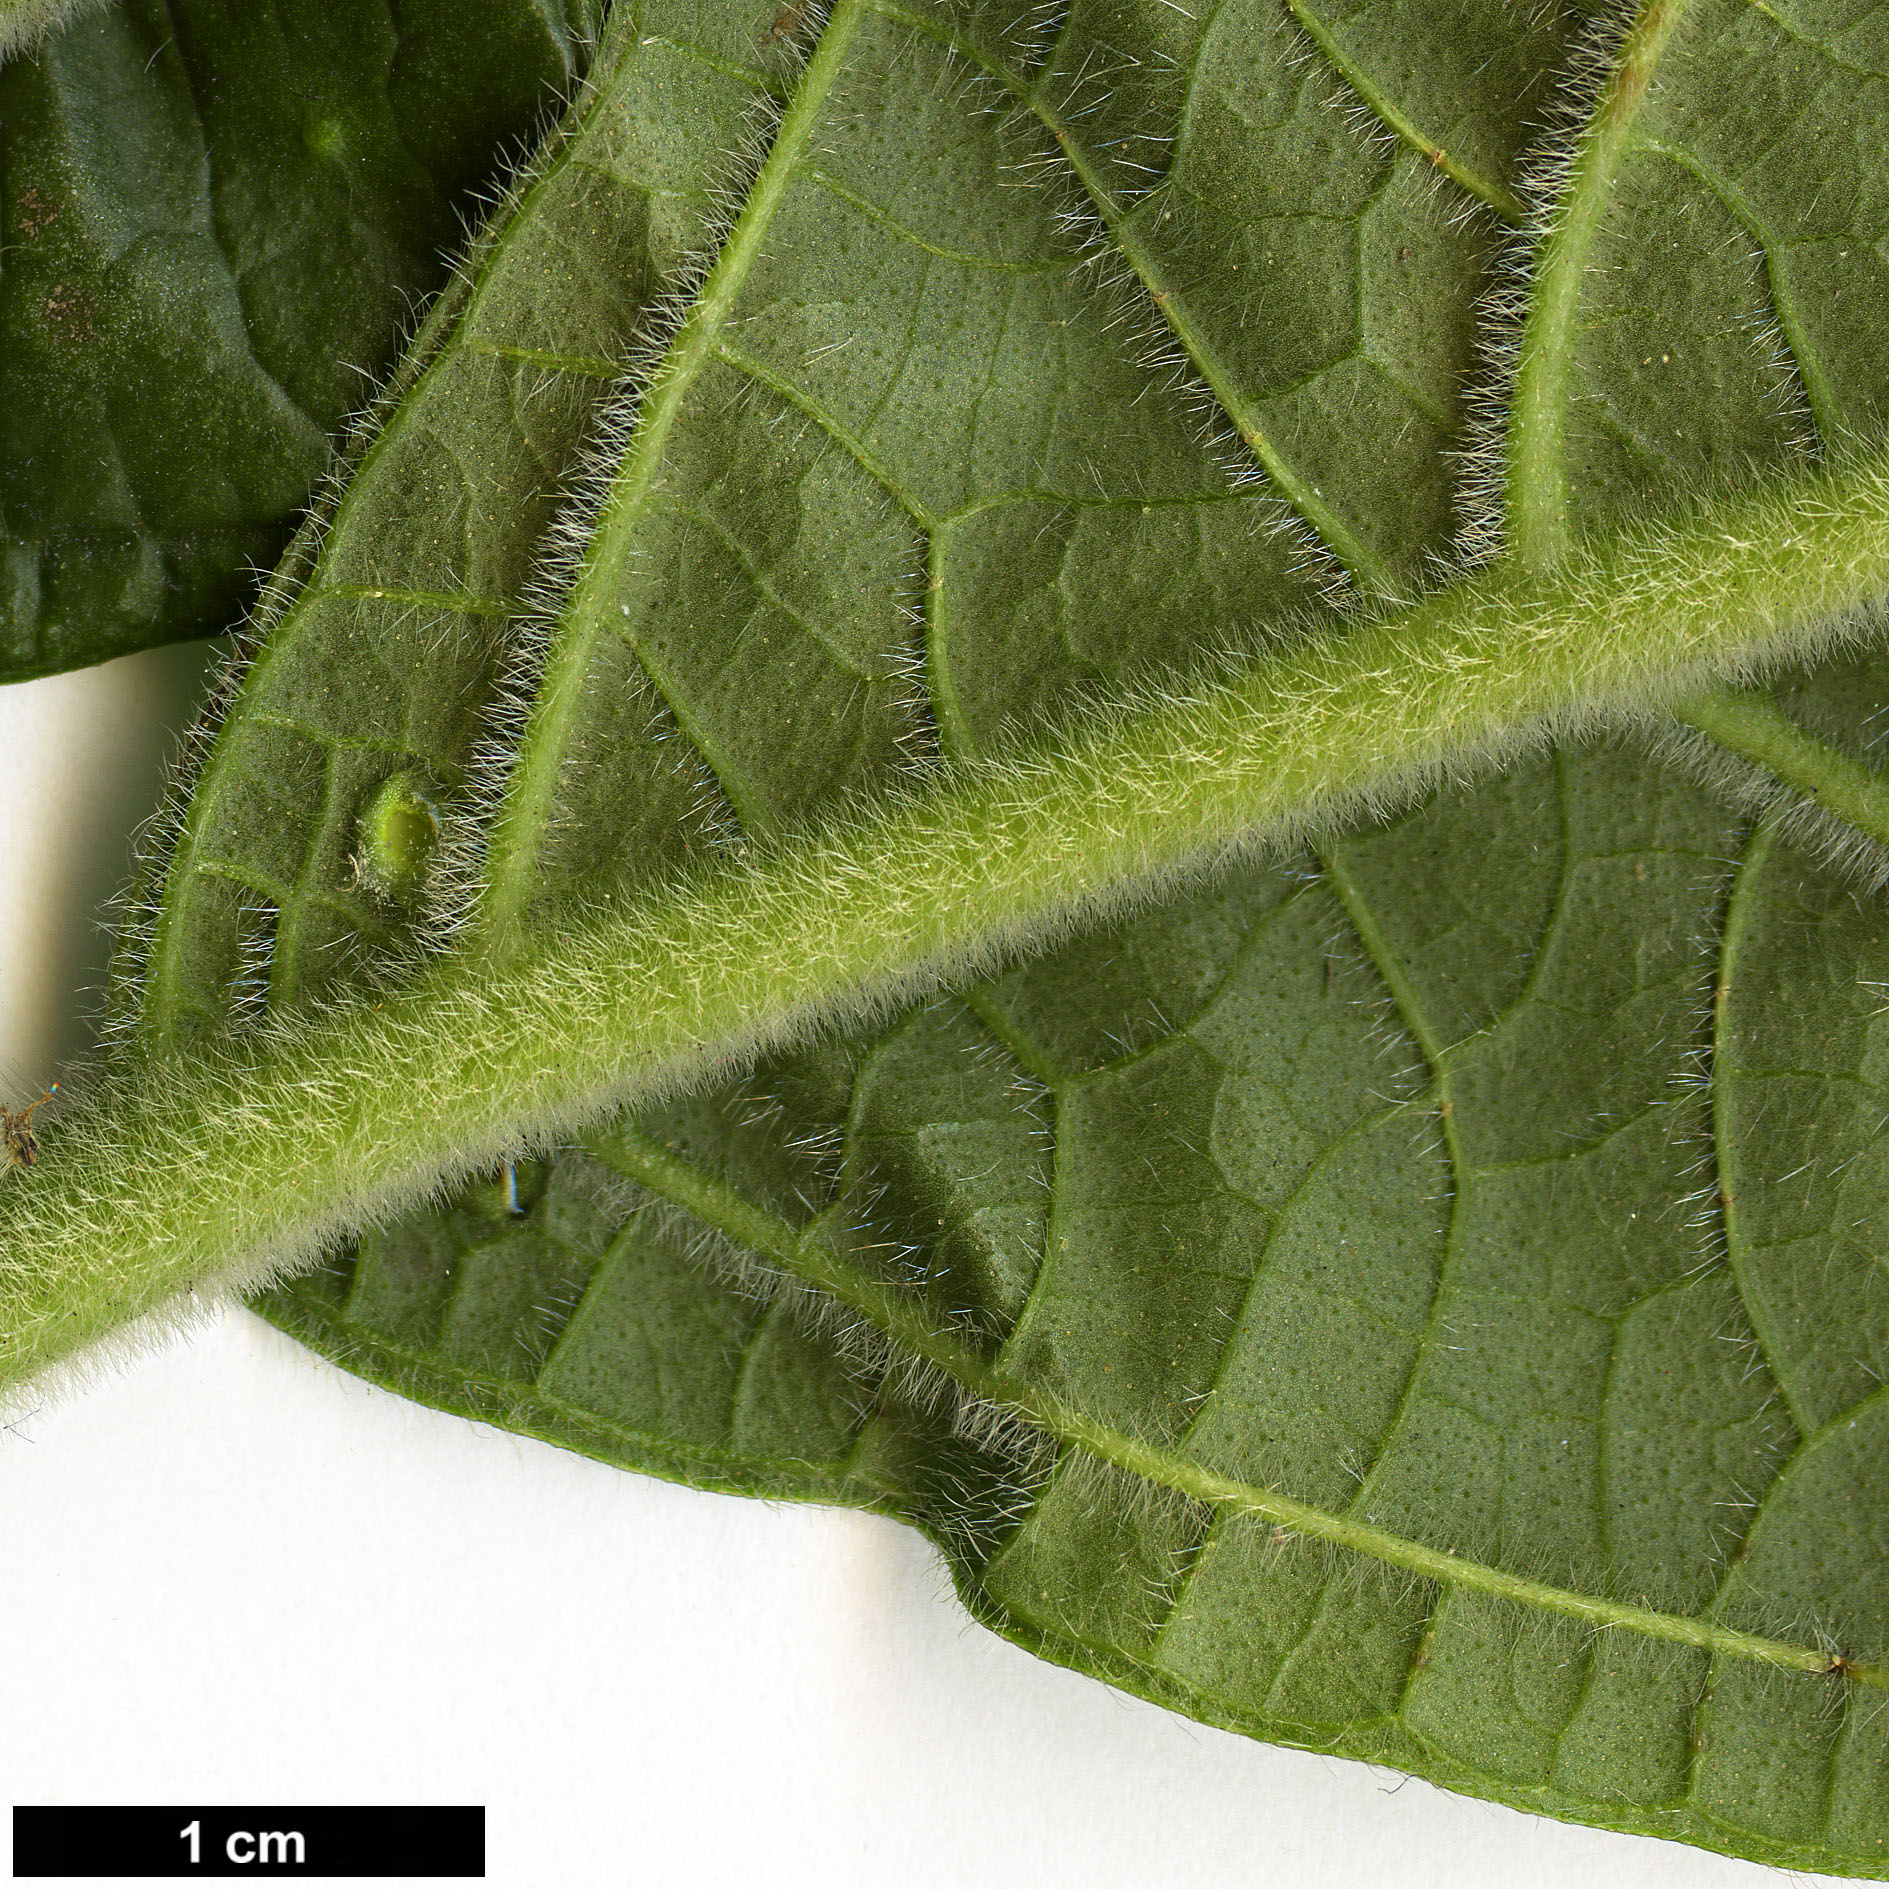 High resolution image: Family: Adoxaceae - Genus: Viburnum - Taxon: sambucinum - SpeciesSub: var. tomentosum